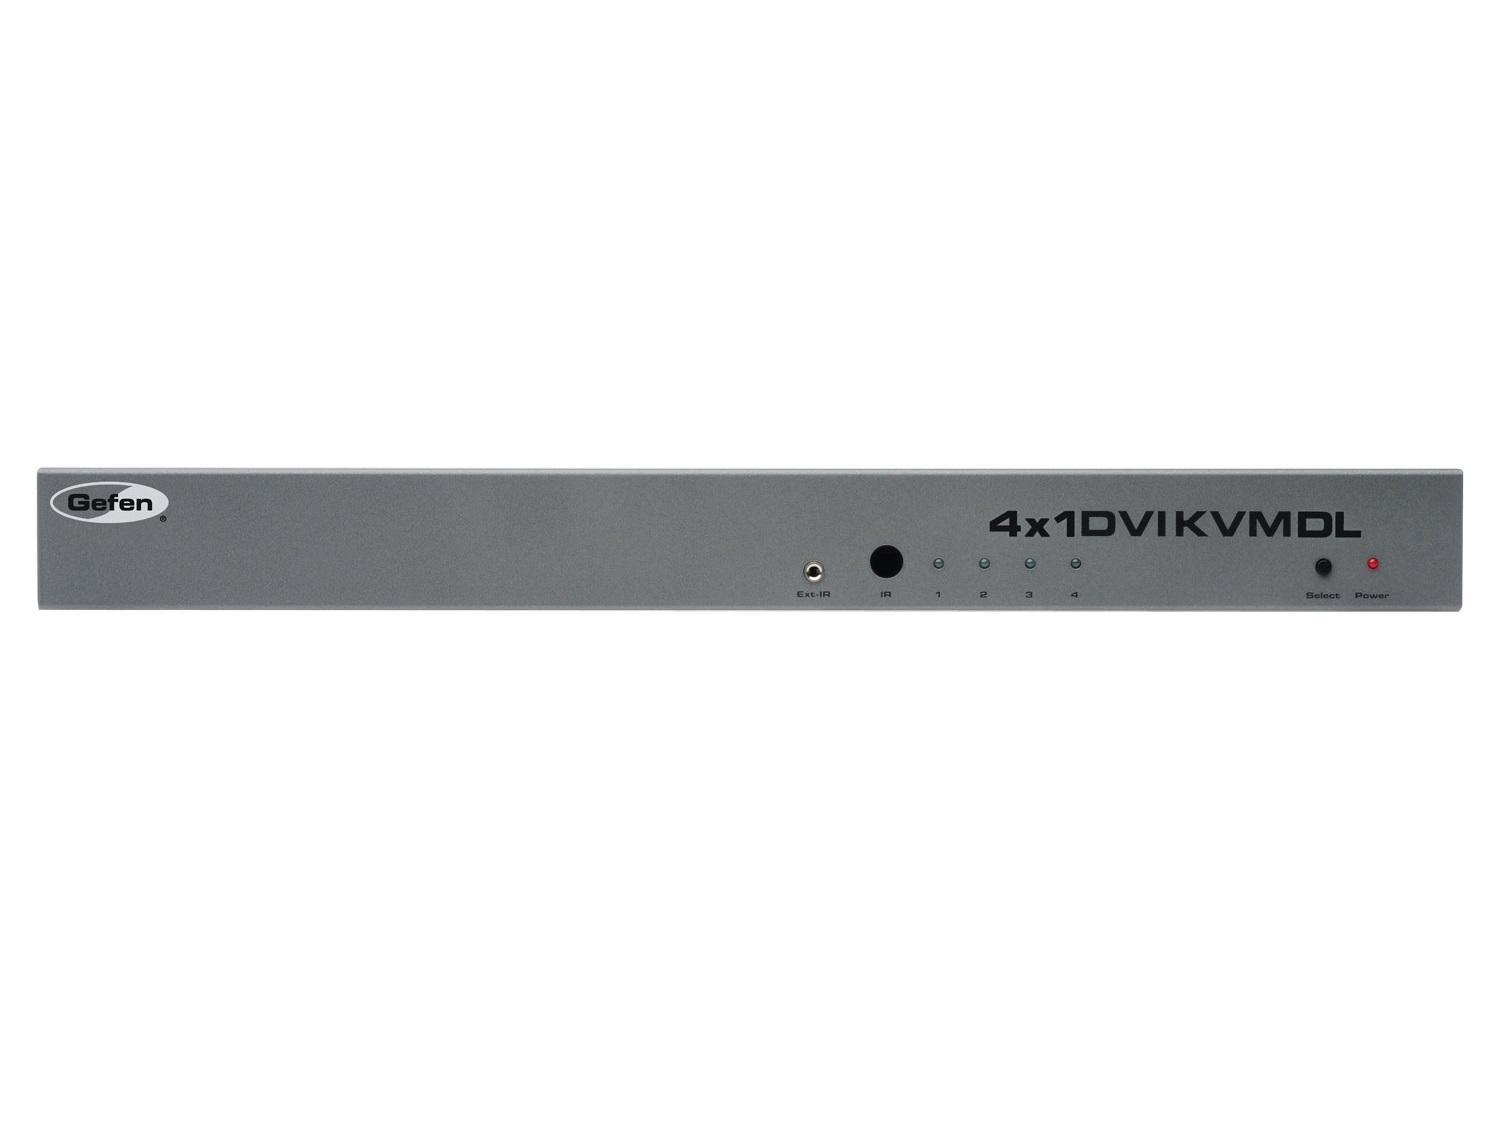 Gefen EXT-DVIKVM-441DL 4x1 DVI KVM Switcher